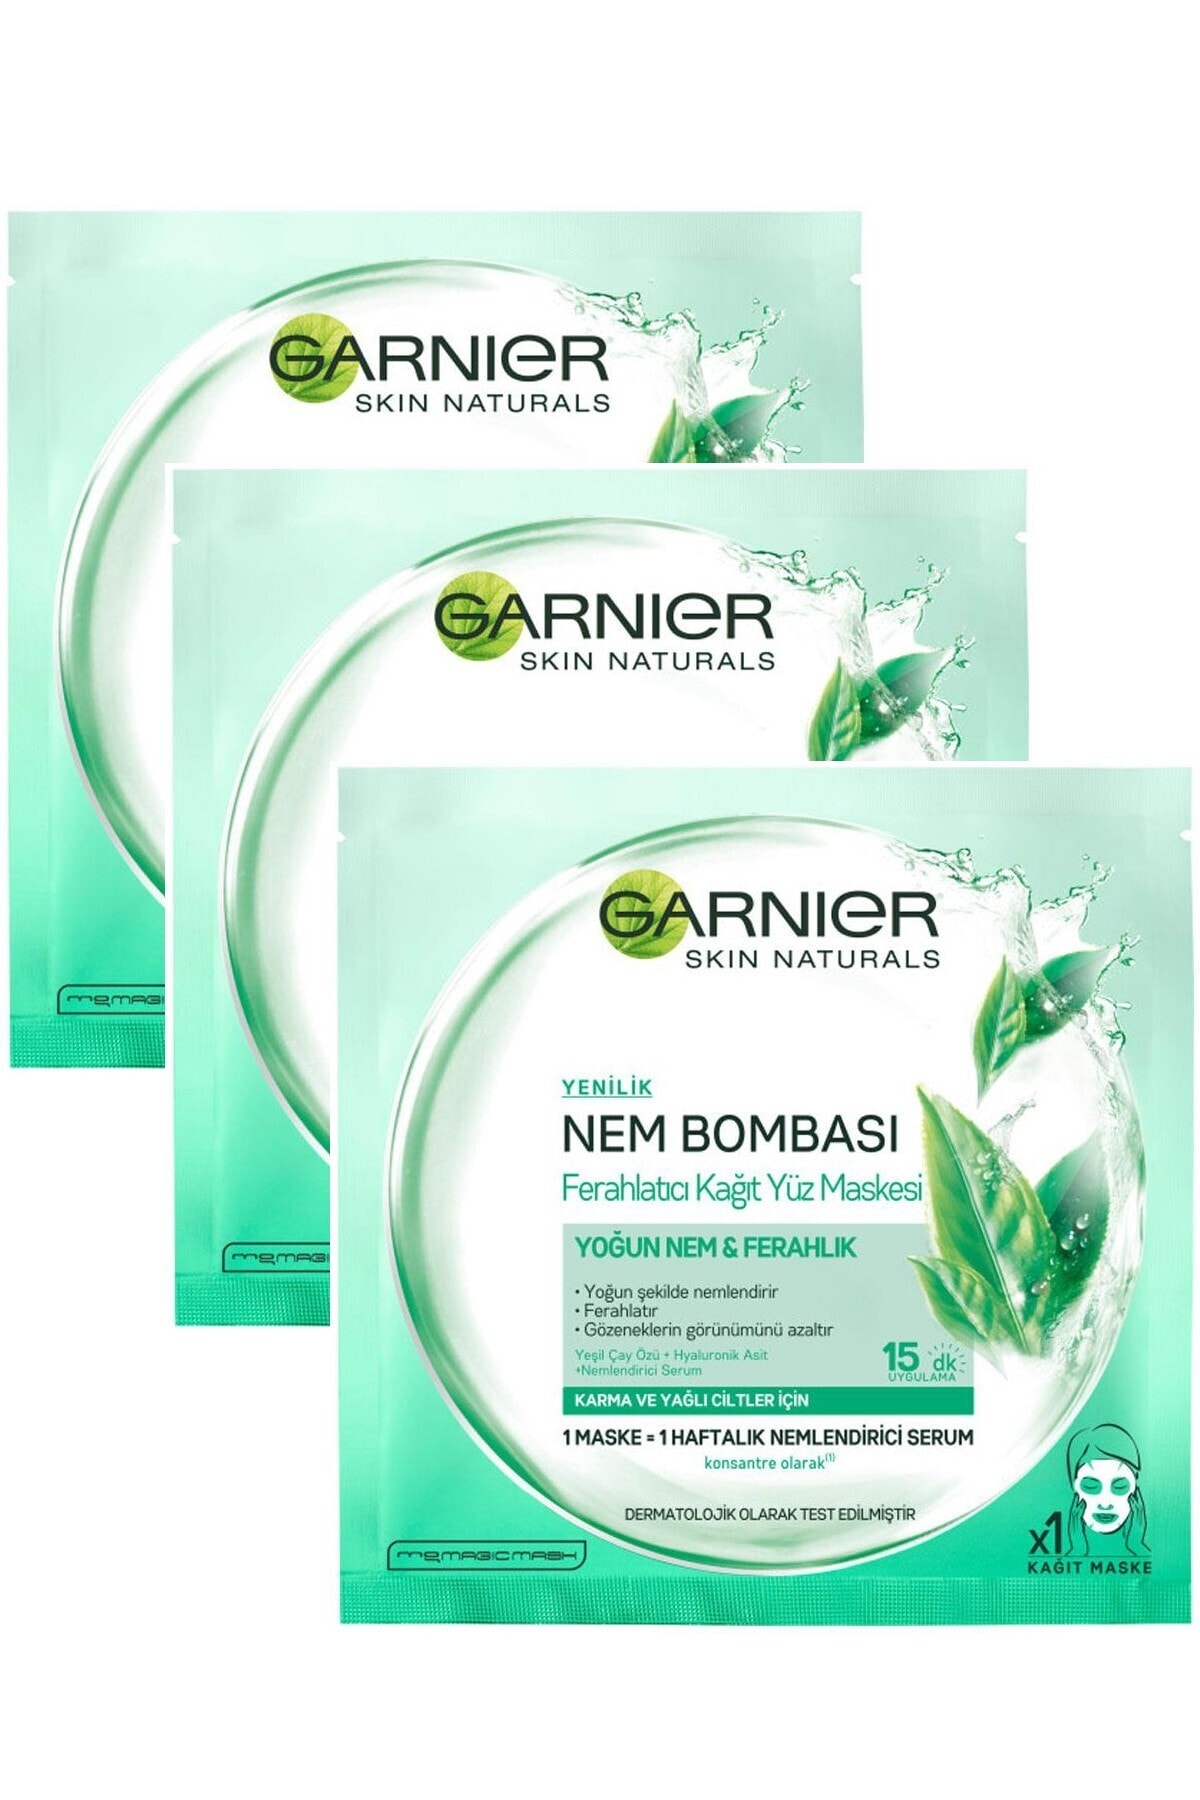 Garnier 5 Adet Nem Bombası Ferahlatıcı Kağıt Yüz Maskesi Yeşil Çay Özleri Ve Hyaluronik Asit Içerir